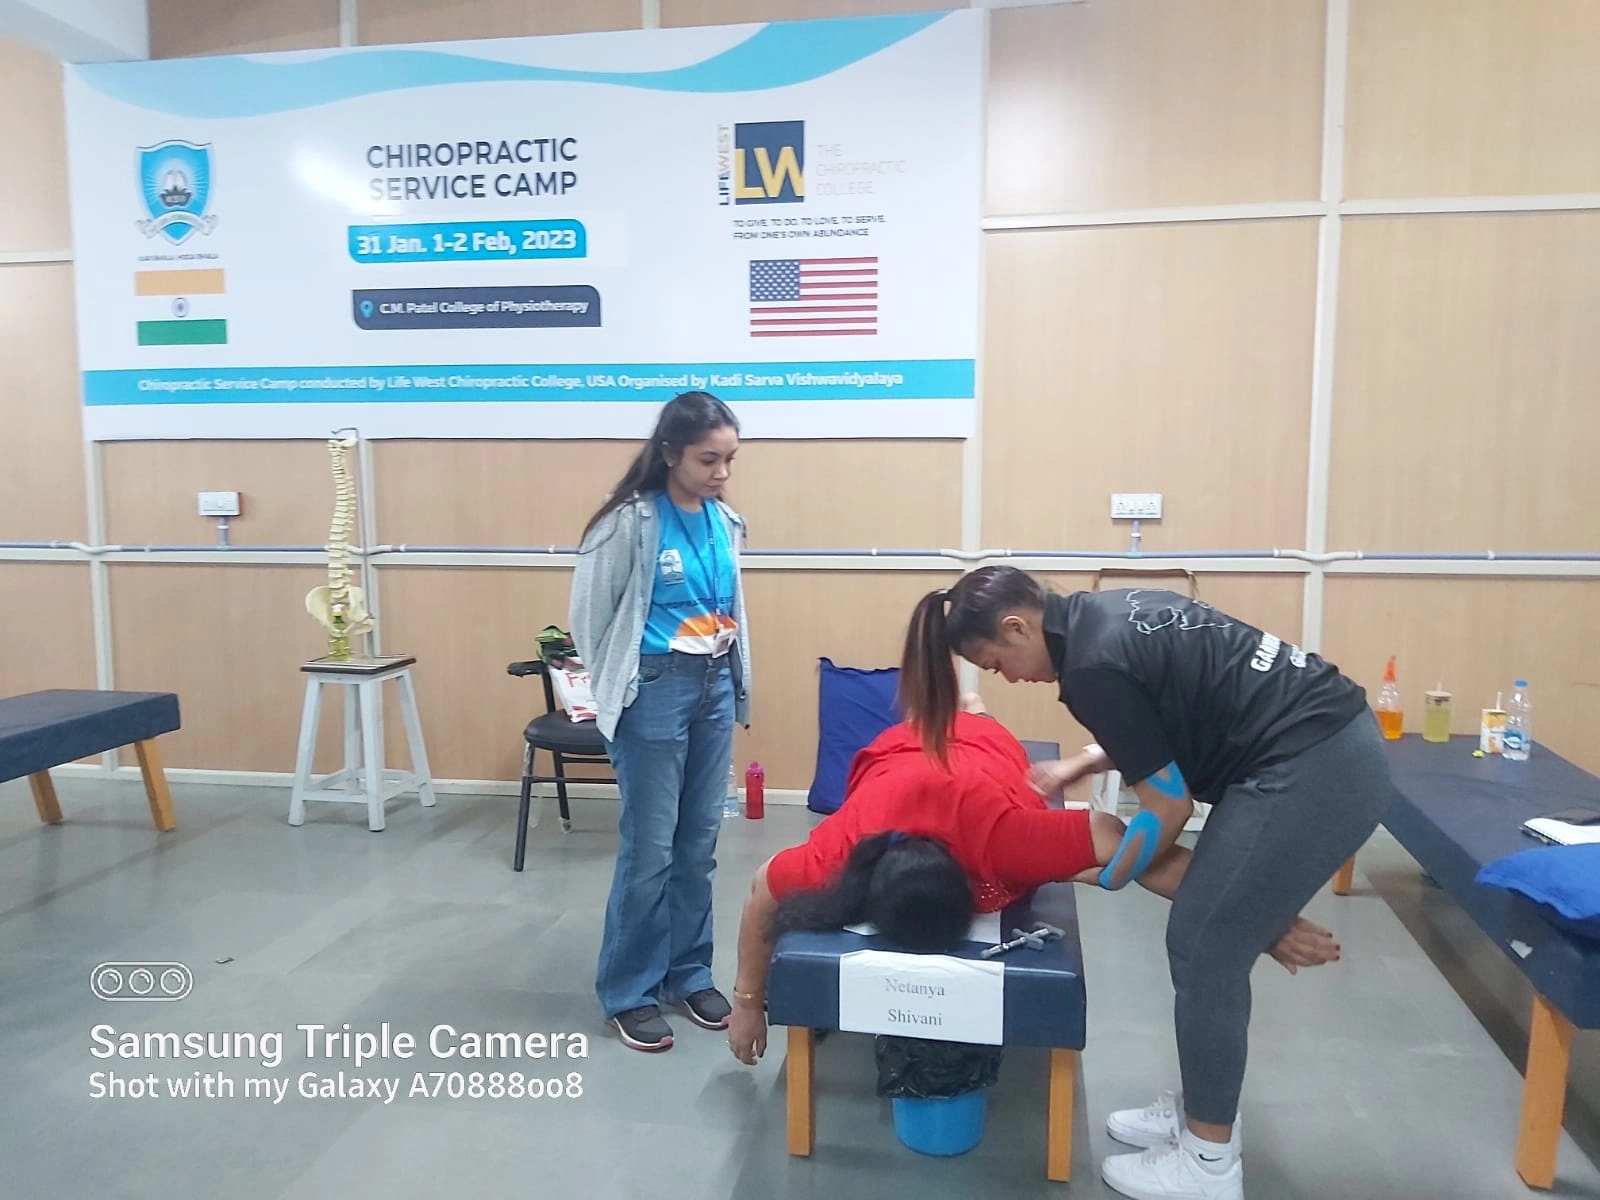 three-day chiropractor camp organized by Gandhinagar